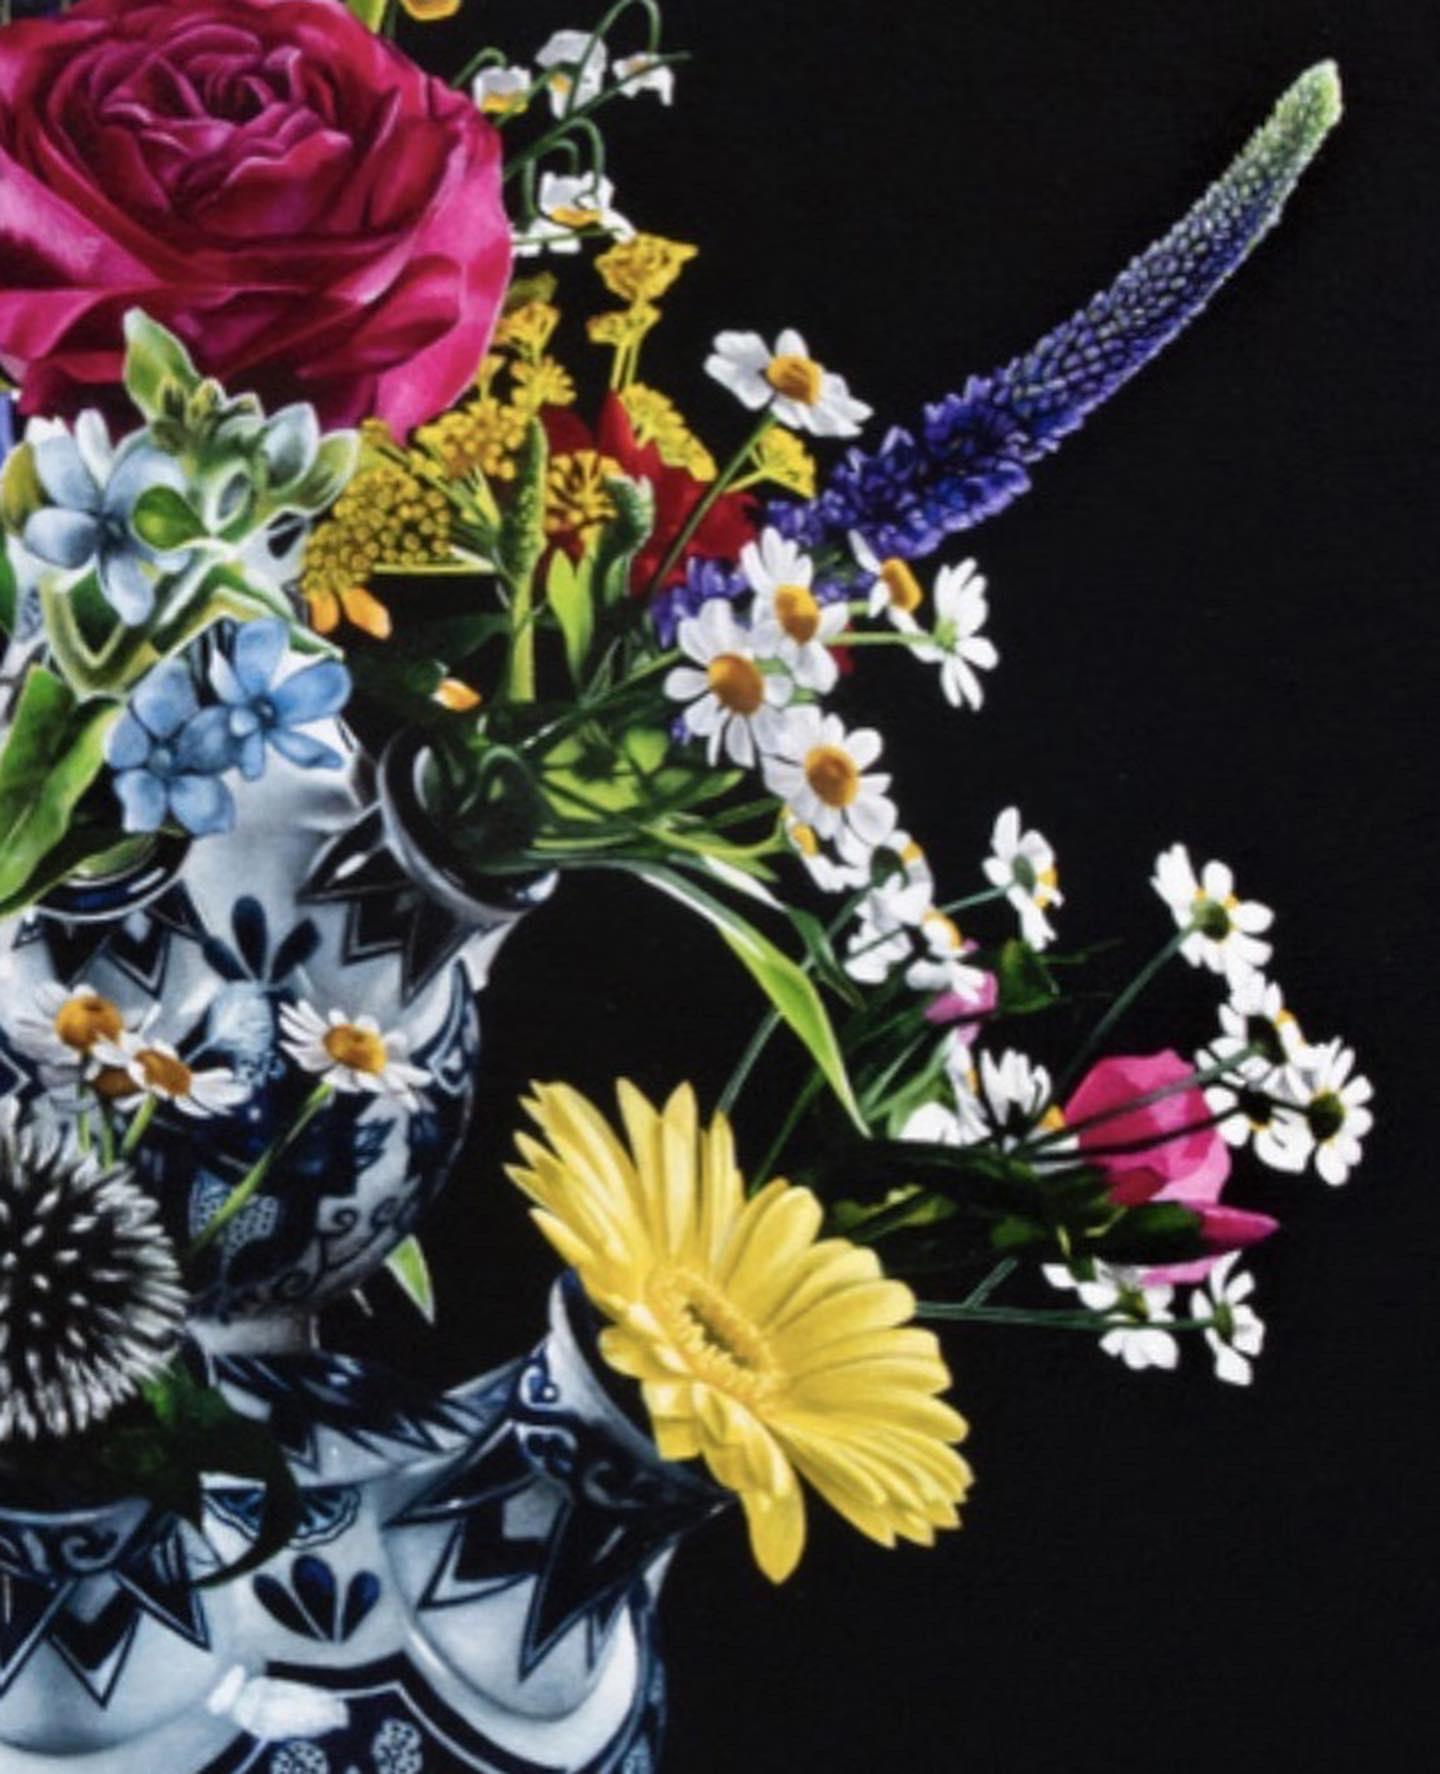 Joran van der Haar
Fleurs
104 x 80 cm ( encadré 116 x 92 cm, le cadre est inclus dans le prix)
huile sur toile

Les bouquets peints réalistes 